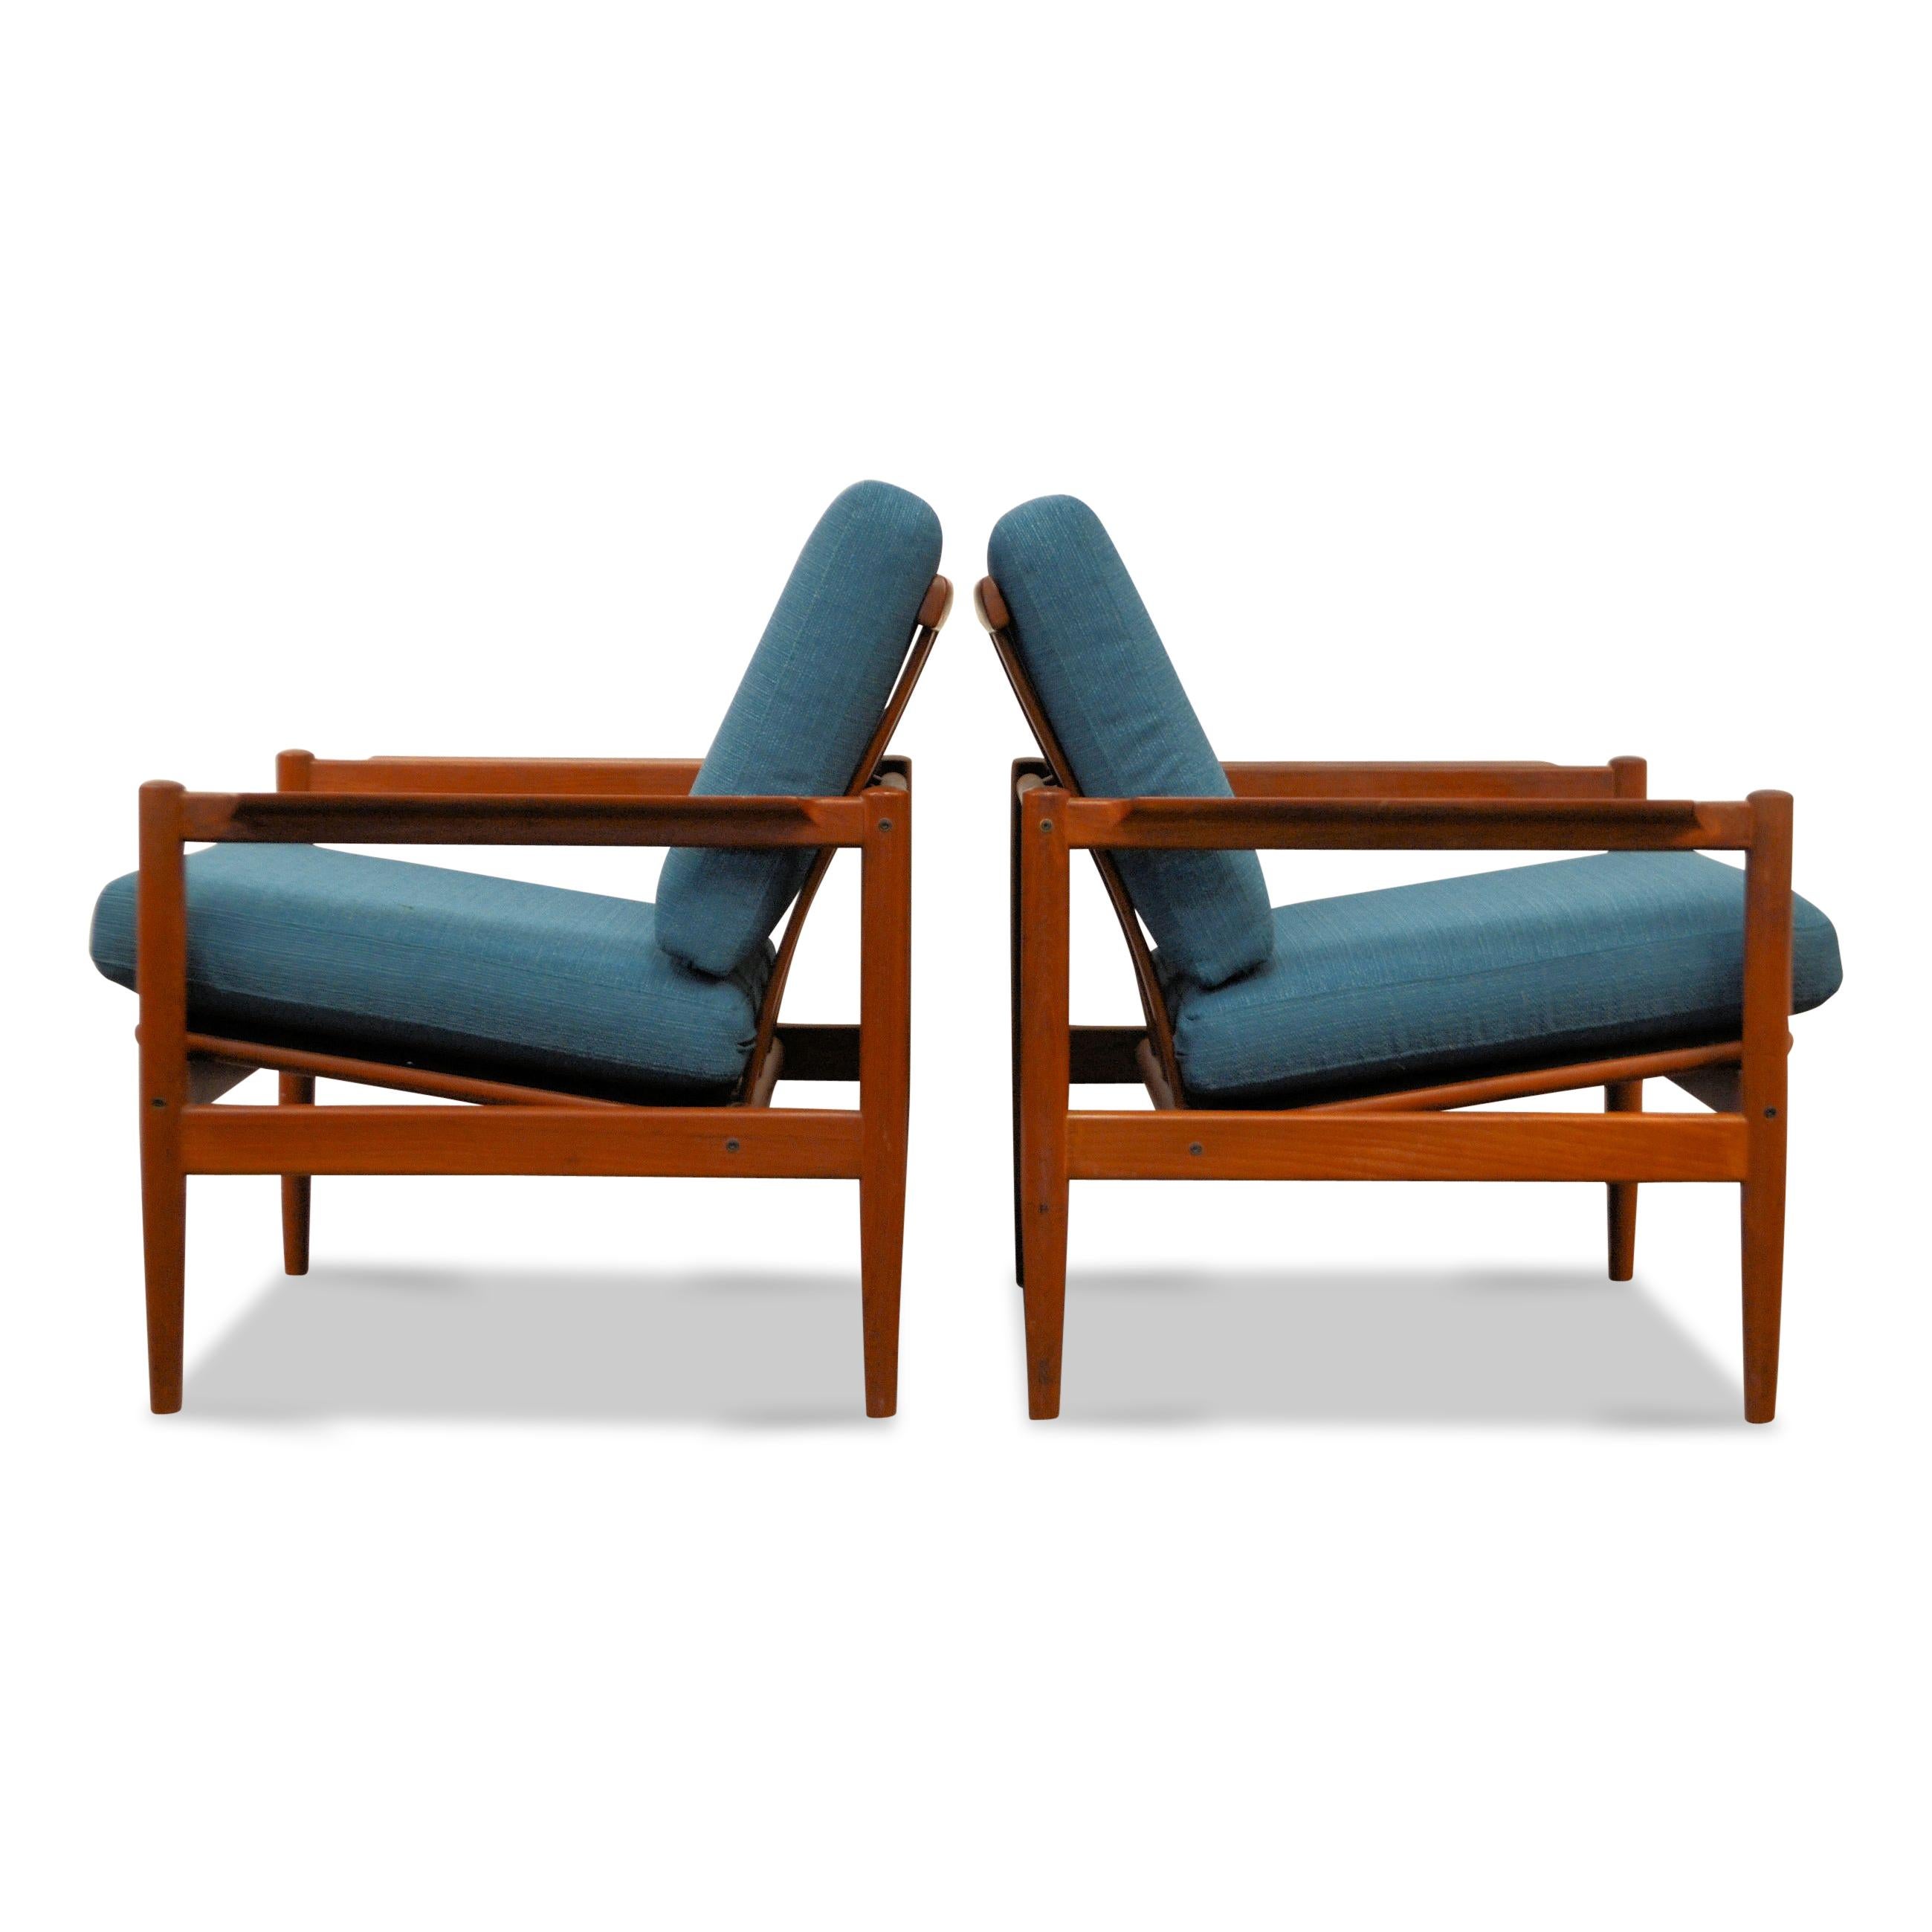 Set van two vintage Deens design teak fauteuils ontworpen door Børge Jensen & Sønner voor Bernstorffsminde Møbelfabrik in Denemarken in de jaren 50/60. Deze Mid-Century Modern teak fauteuils hebben een prachtige vormgeving en zijn beide voorzien van